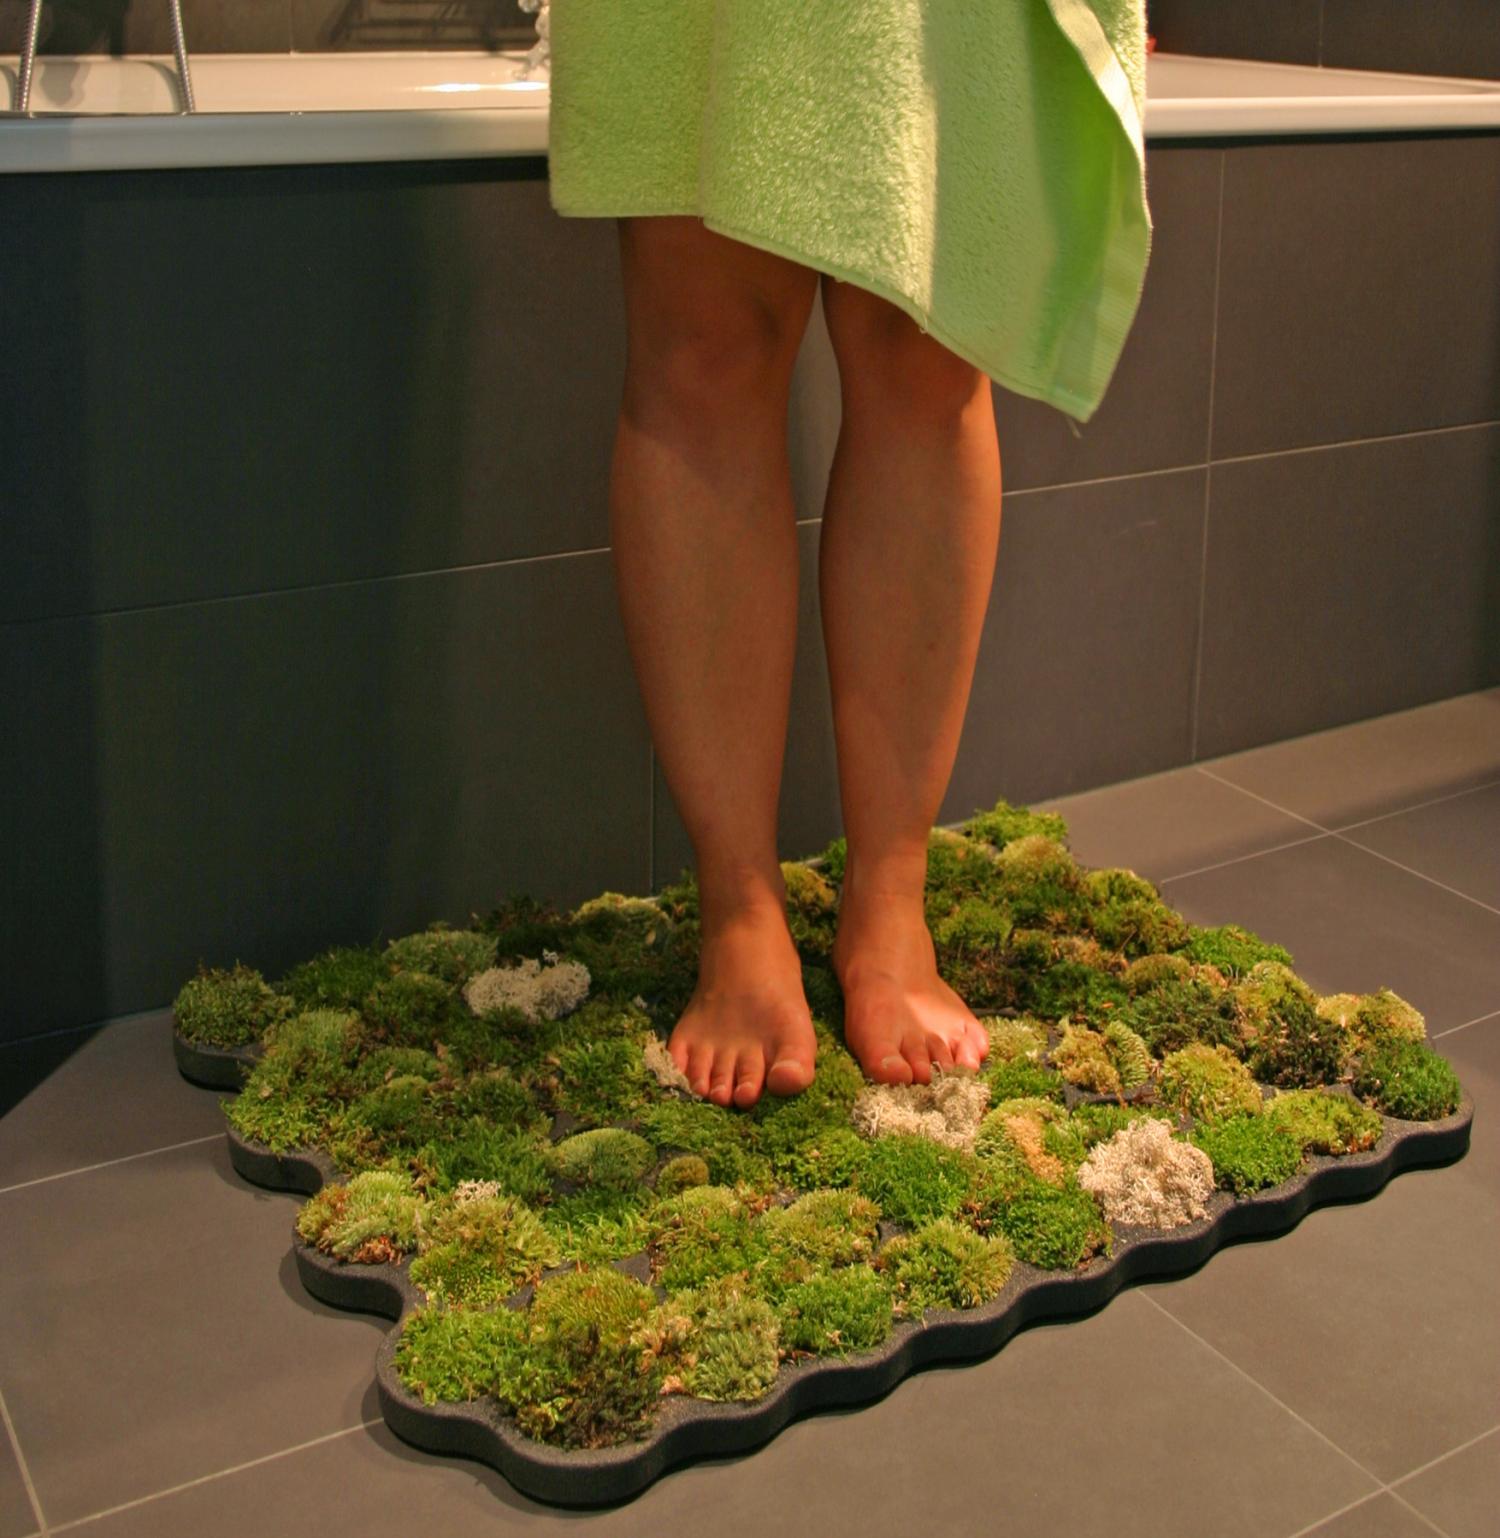 A fürdőszobai szőnyeg előnyei